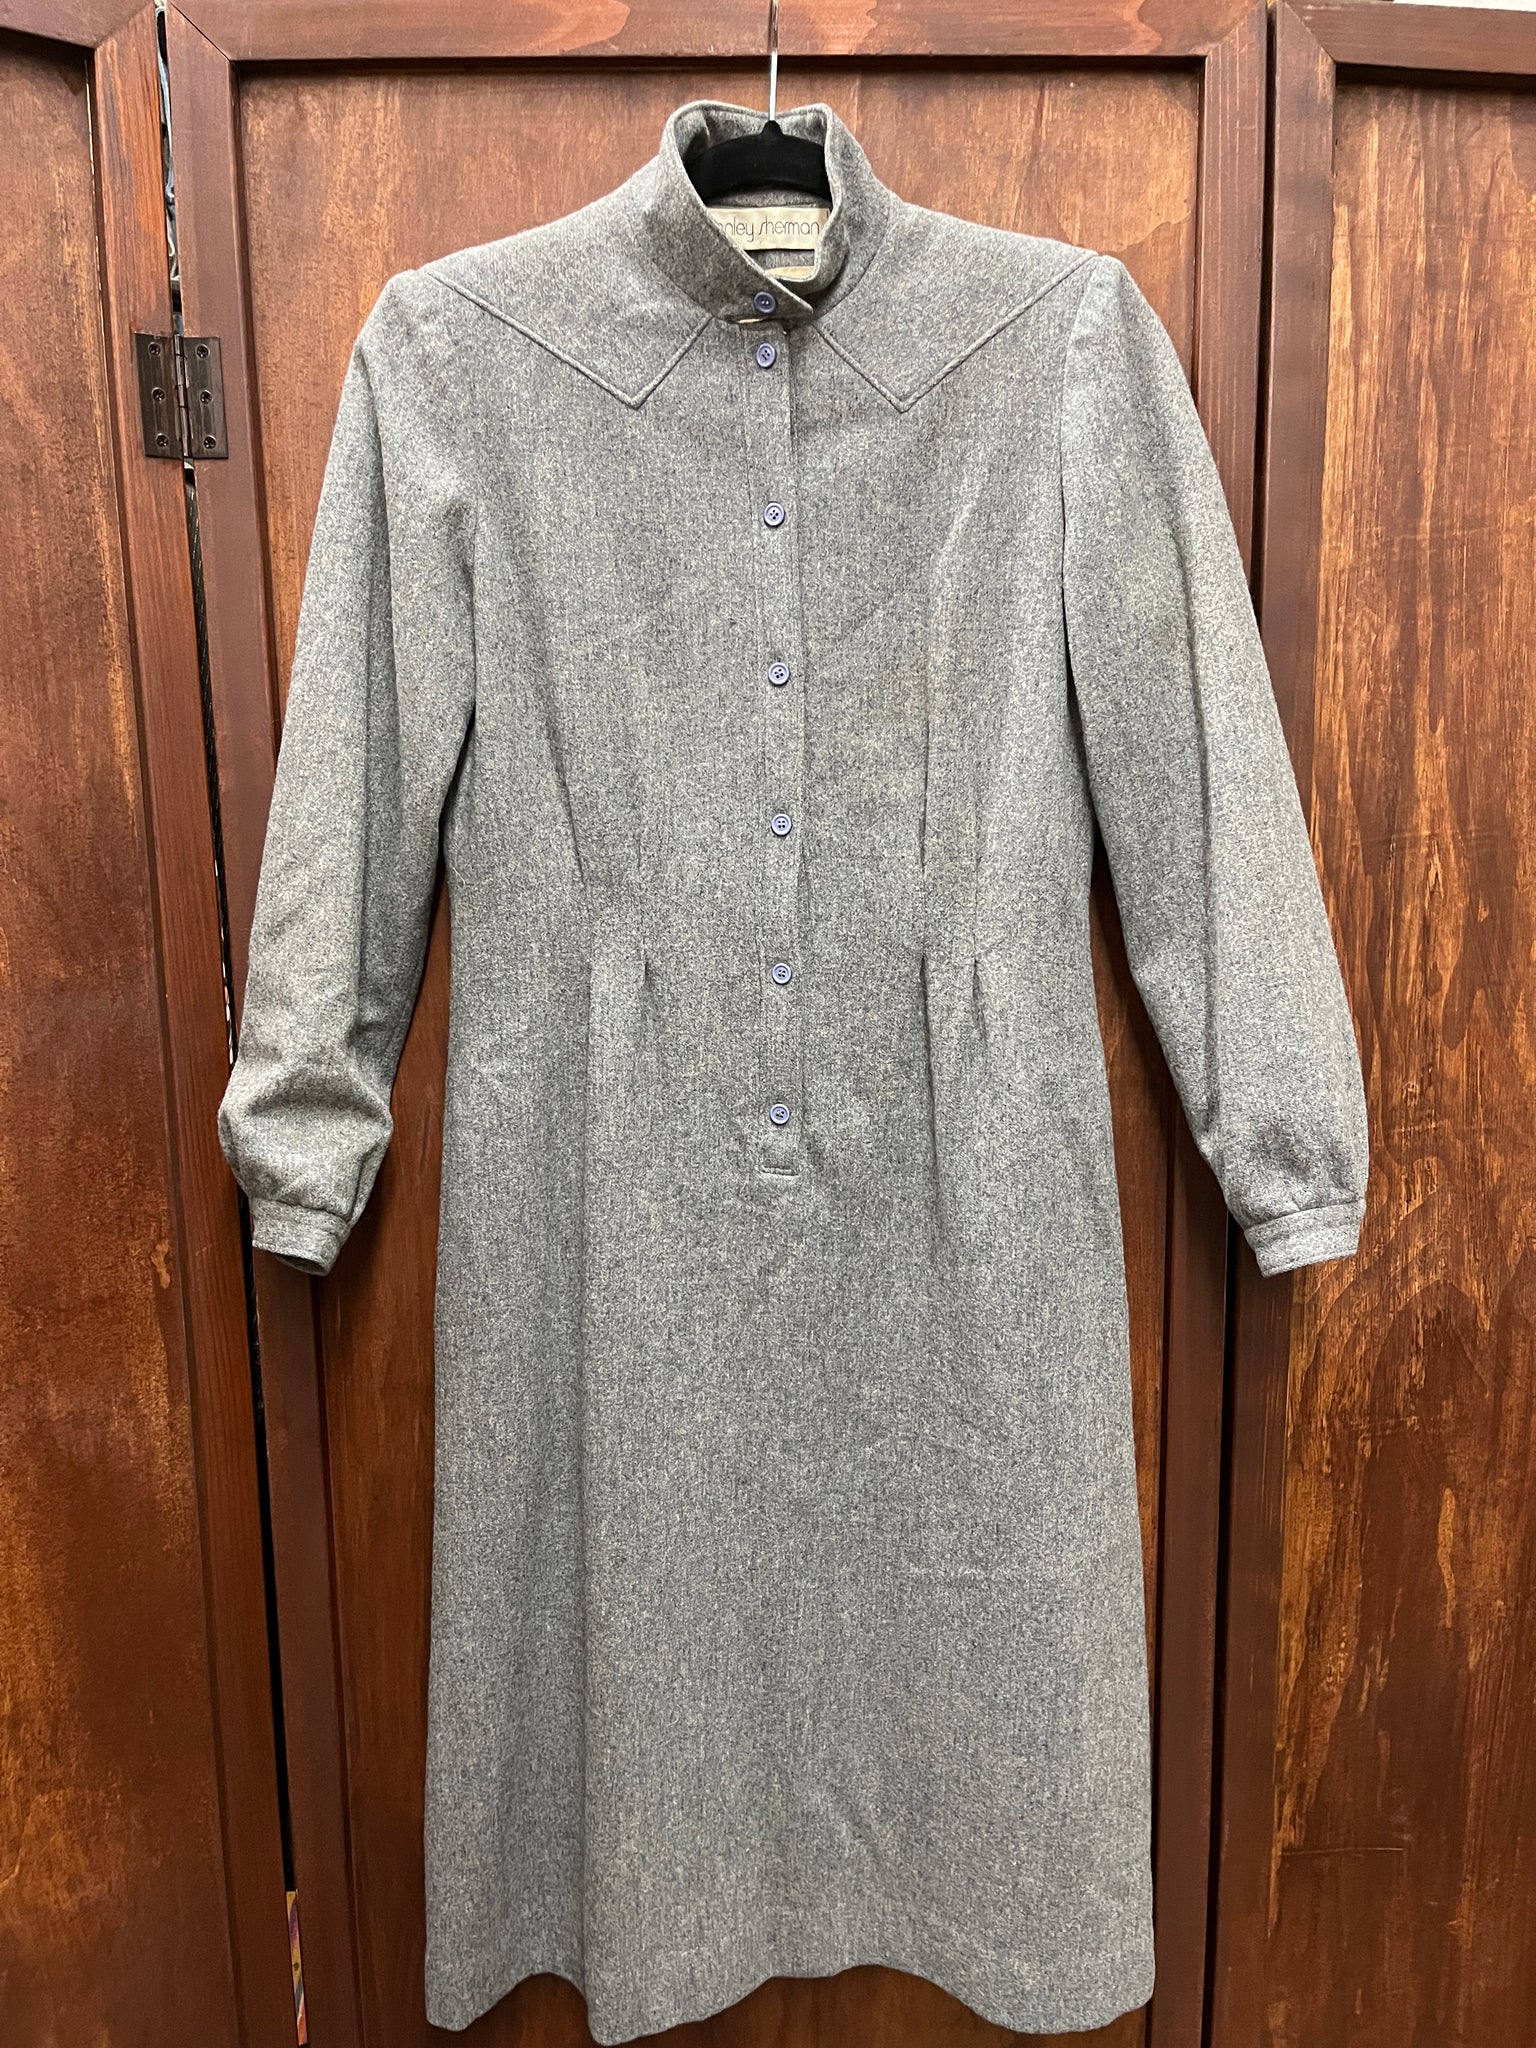 1980s DRESS- Stanley Sherman grey wool coat style